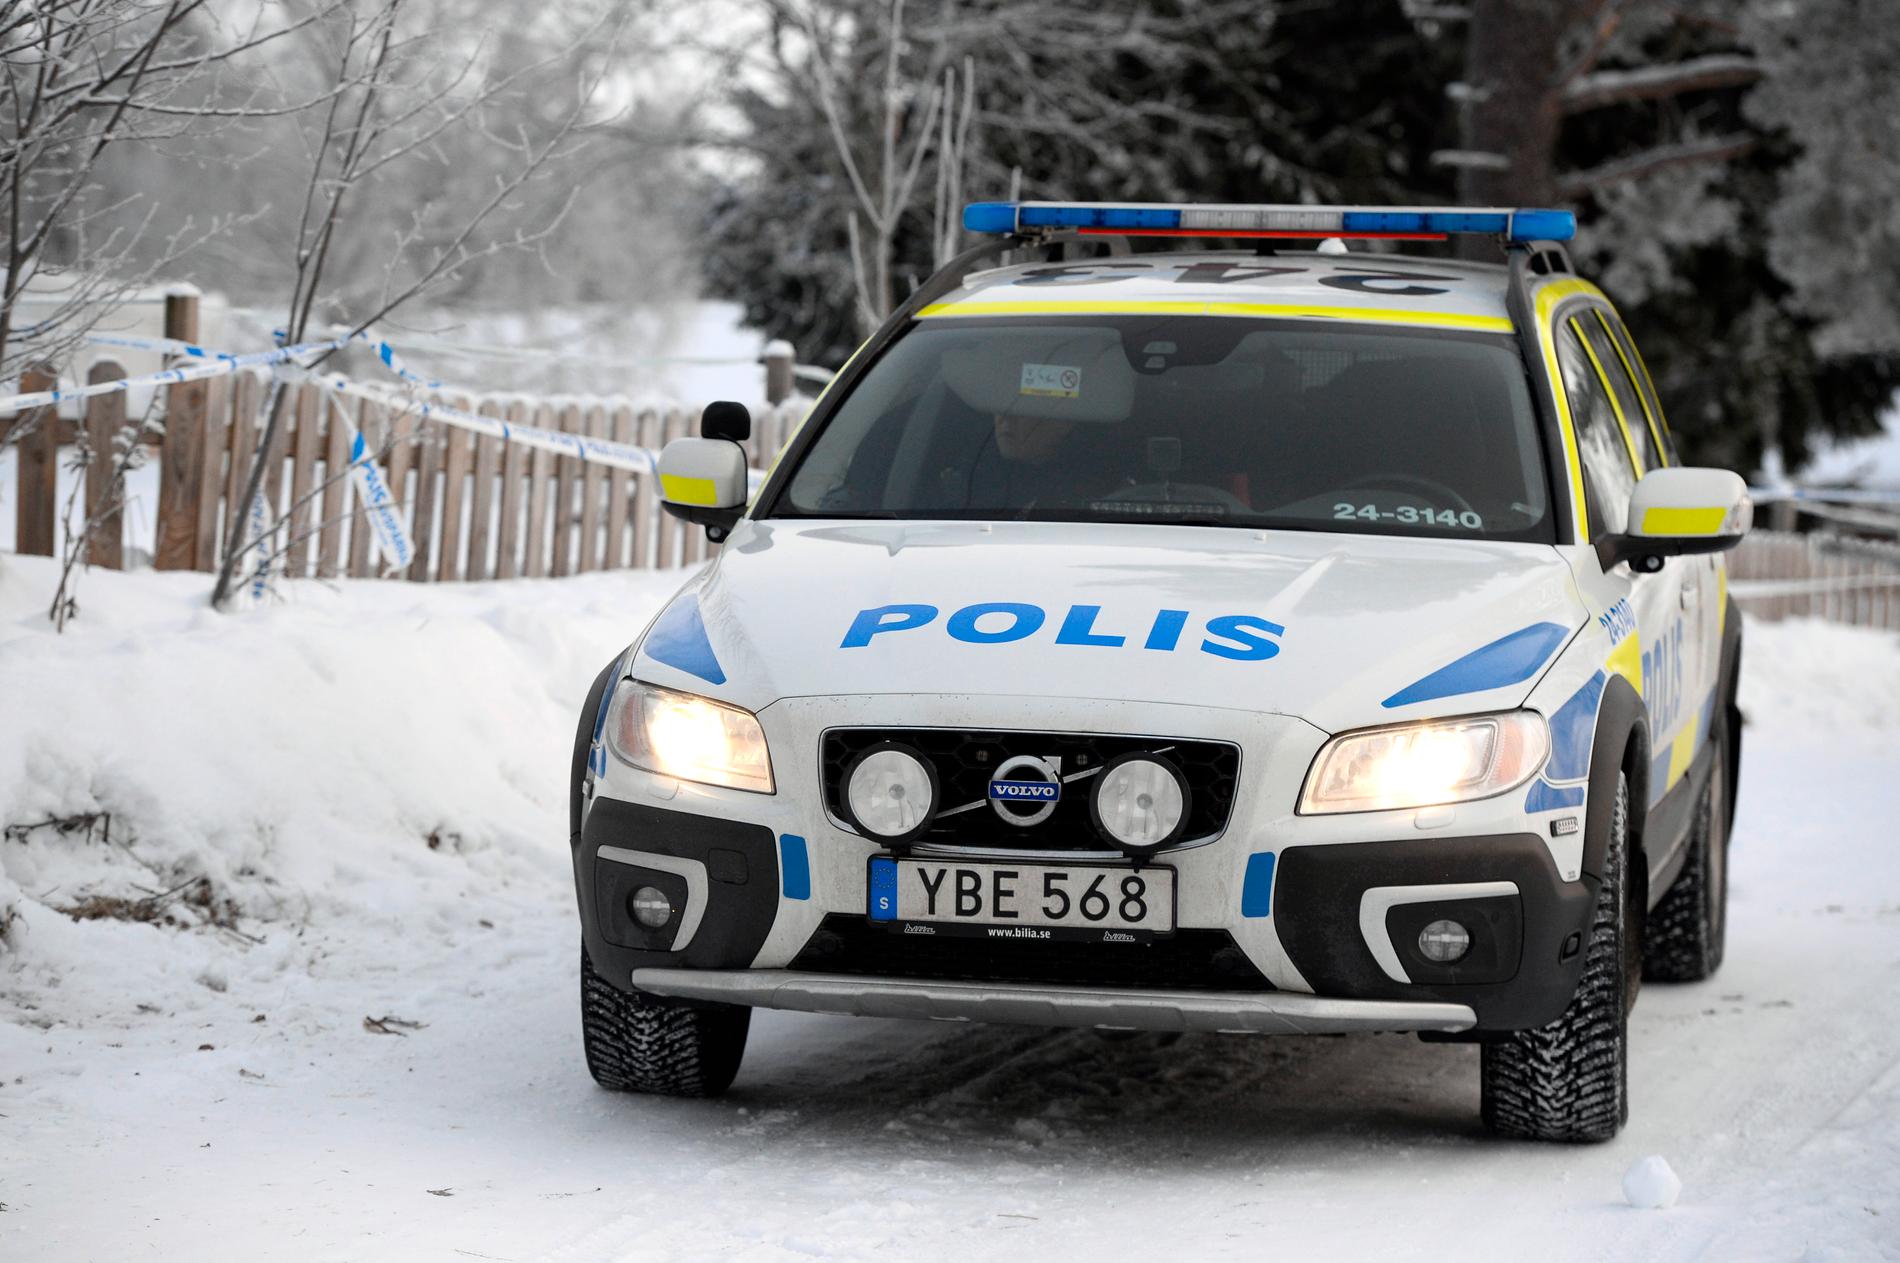 Pappan misstänks ha skjutit ihjäl sina barn, enligt uppgifter till Aftonbladet. 